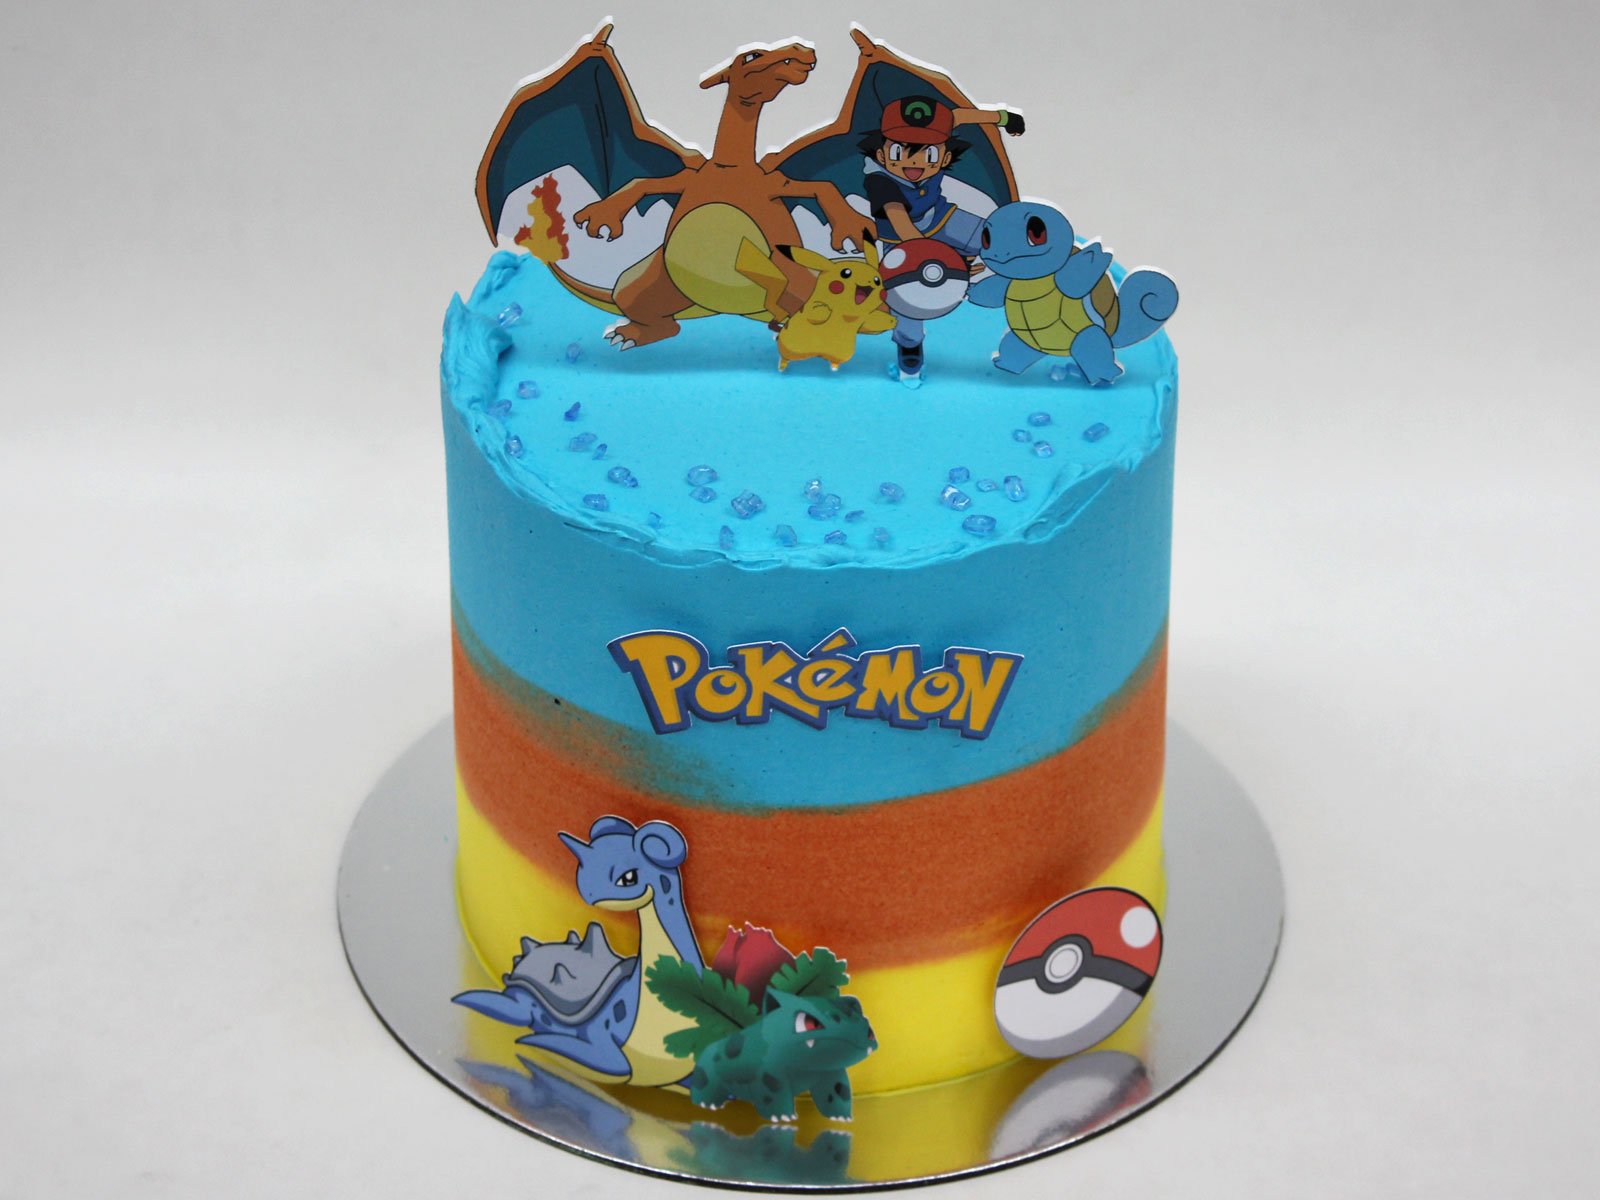 Pokemon Birthday Cake Concept Birthday Celebration Stock Photo 2296844107 |  Shutterstock